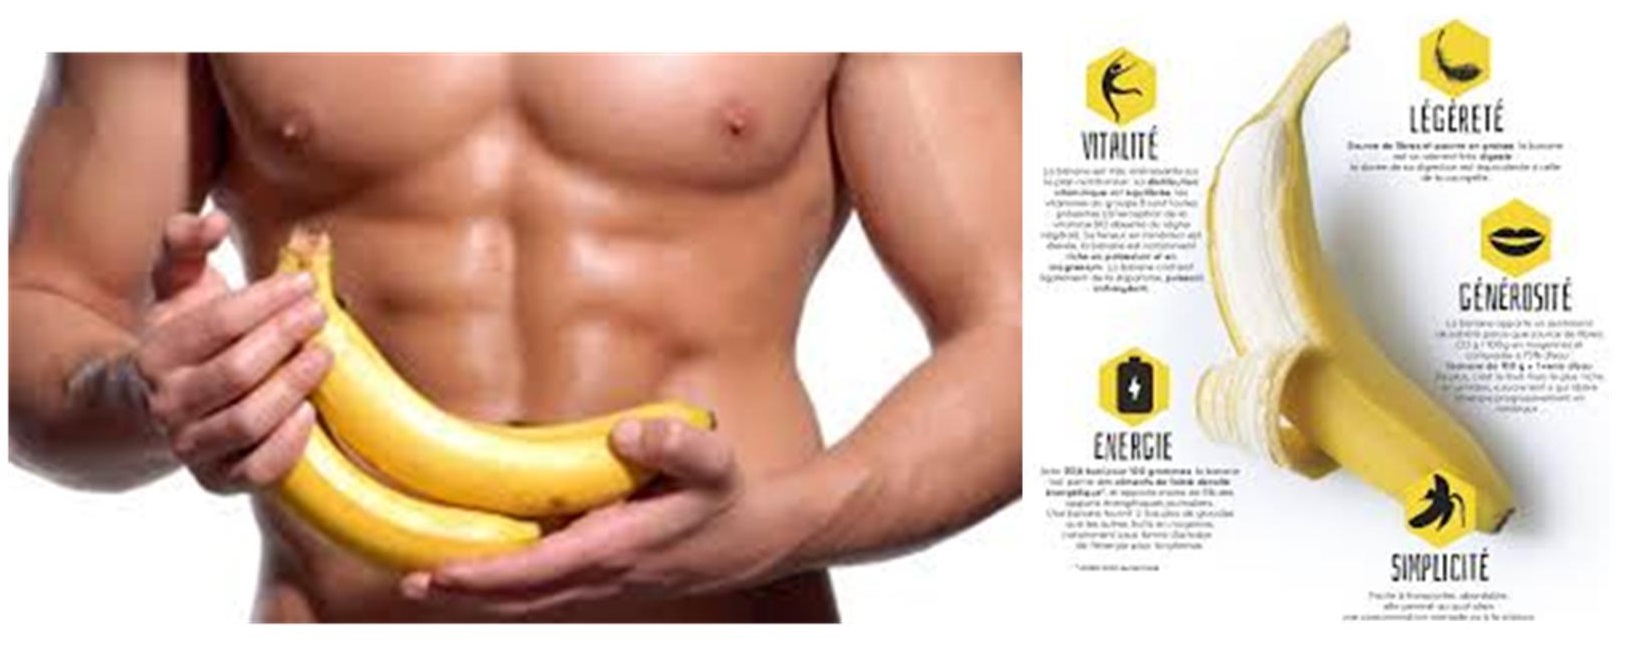 Cinq choses que vous ne saviez pas sur la banane